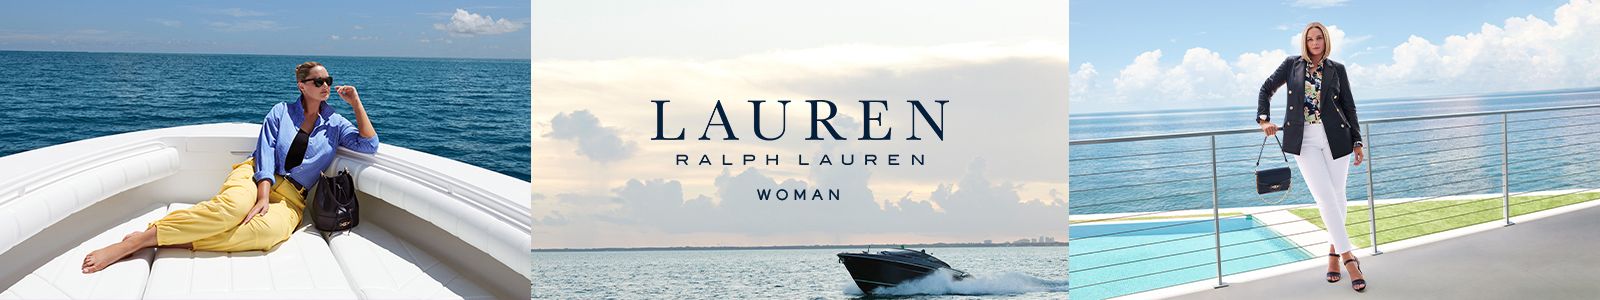 Lauren Ralph Lauren, Woman